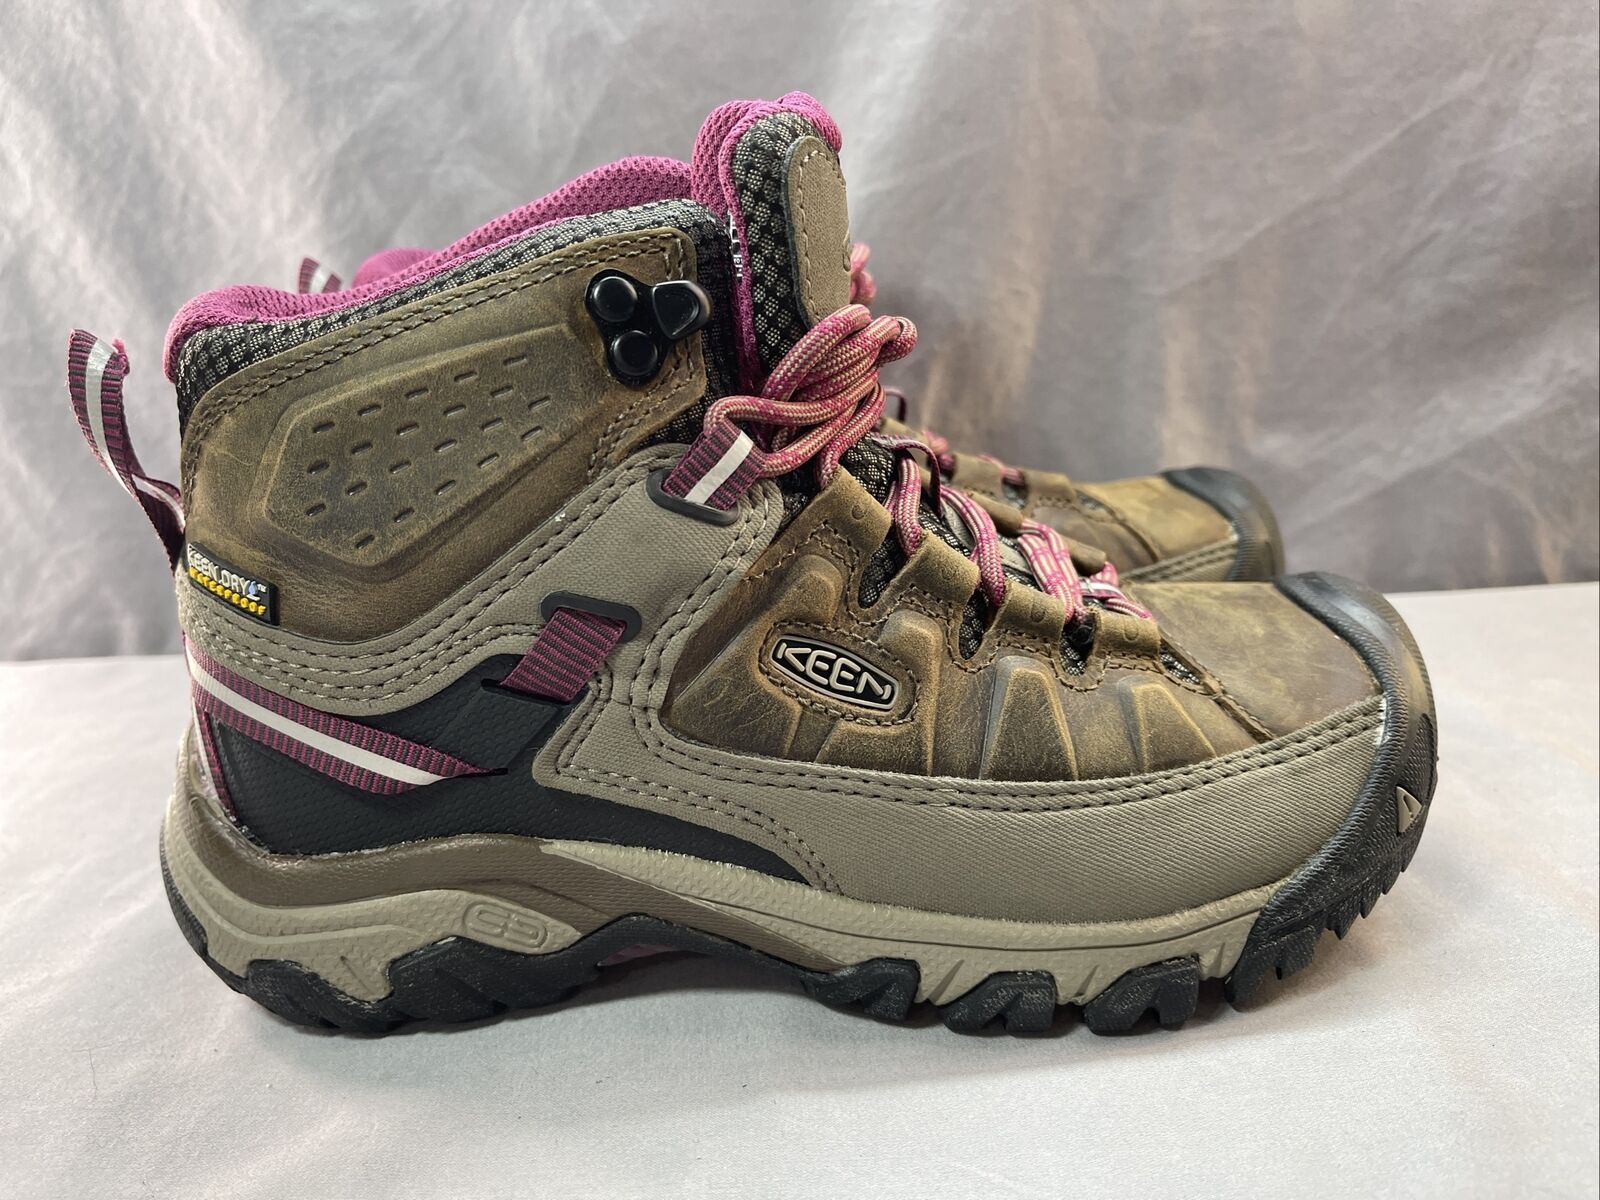 Keen 1018178 Targhee III Mid Hiking Boots Shoes SZ 5